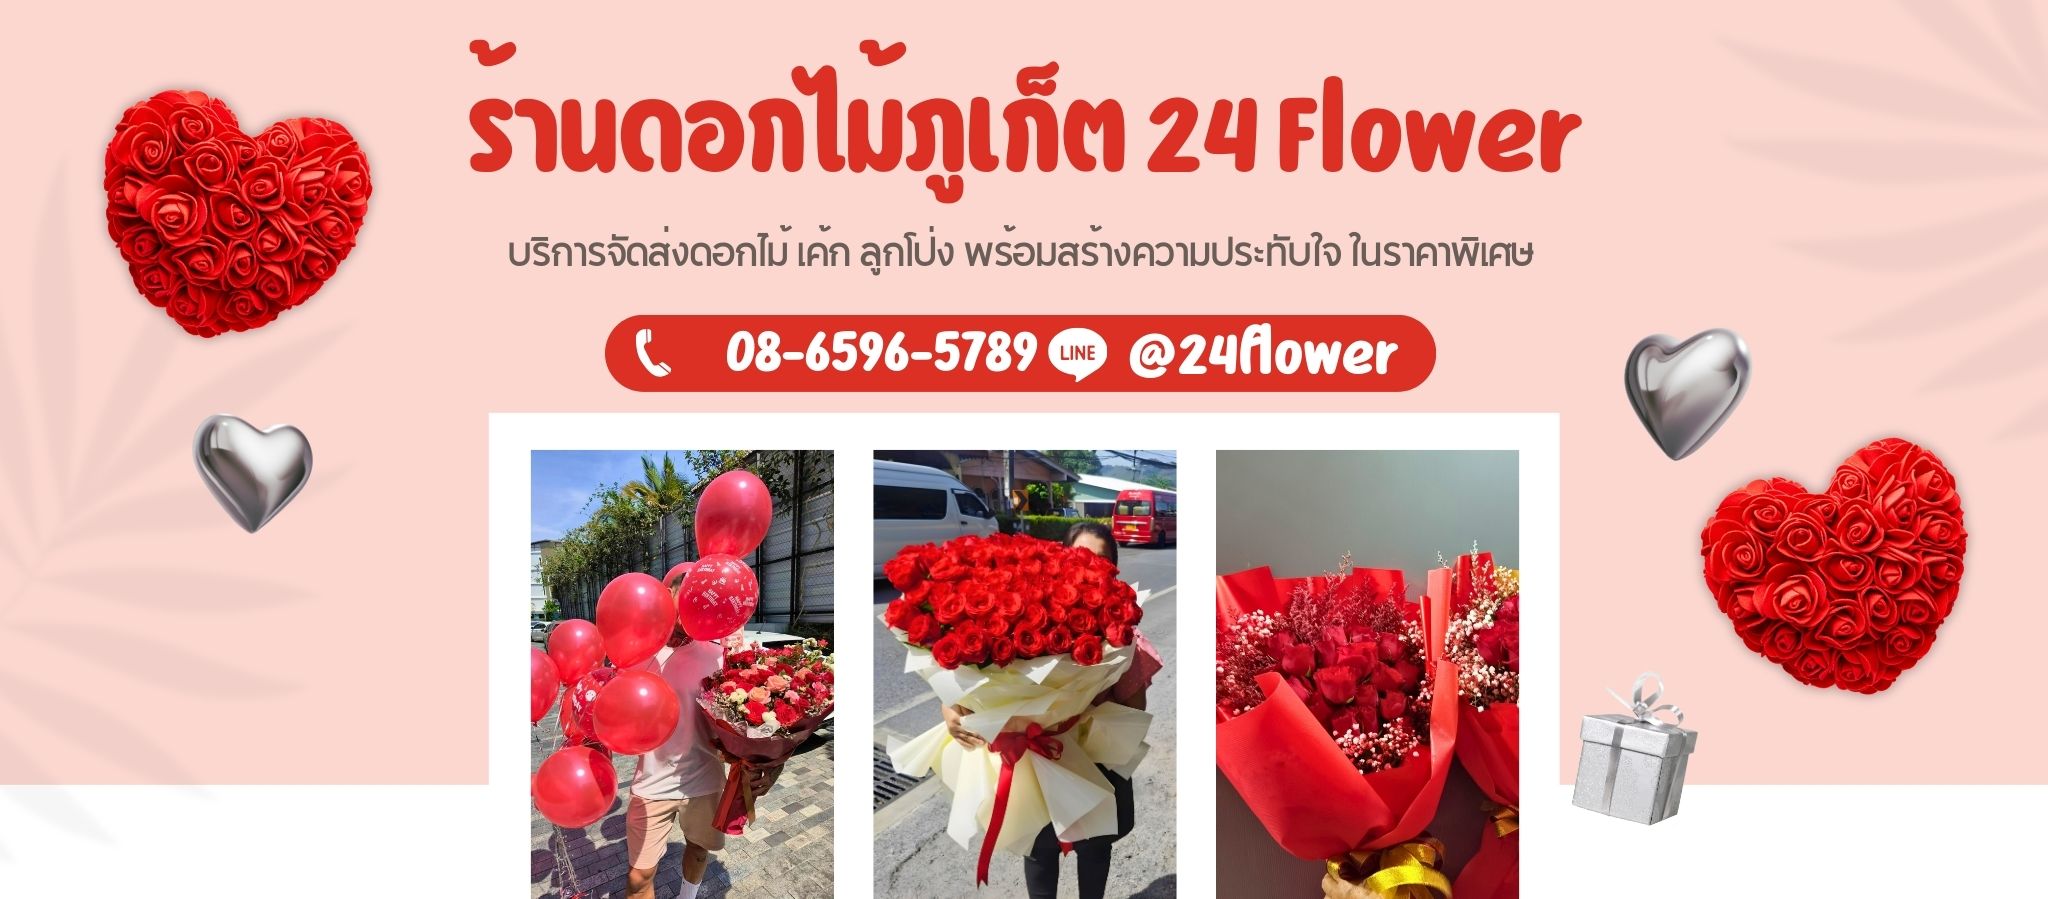 ร้านดอกไม้ภูเก็ต 24 Flower 2